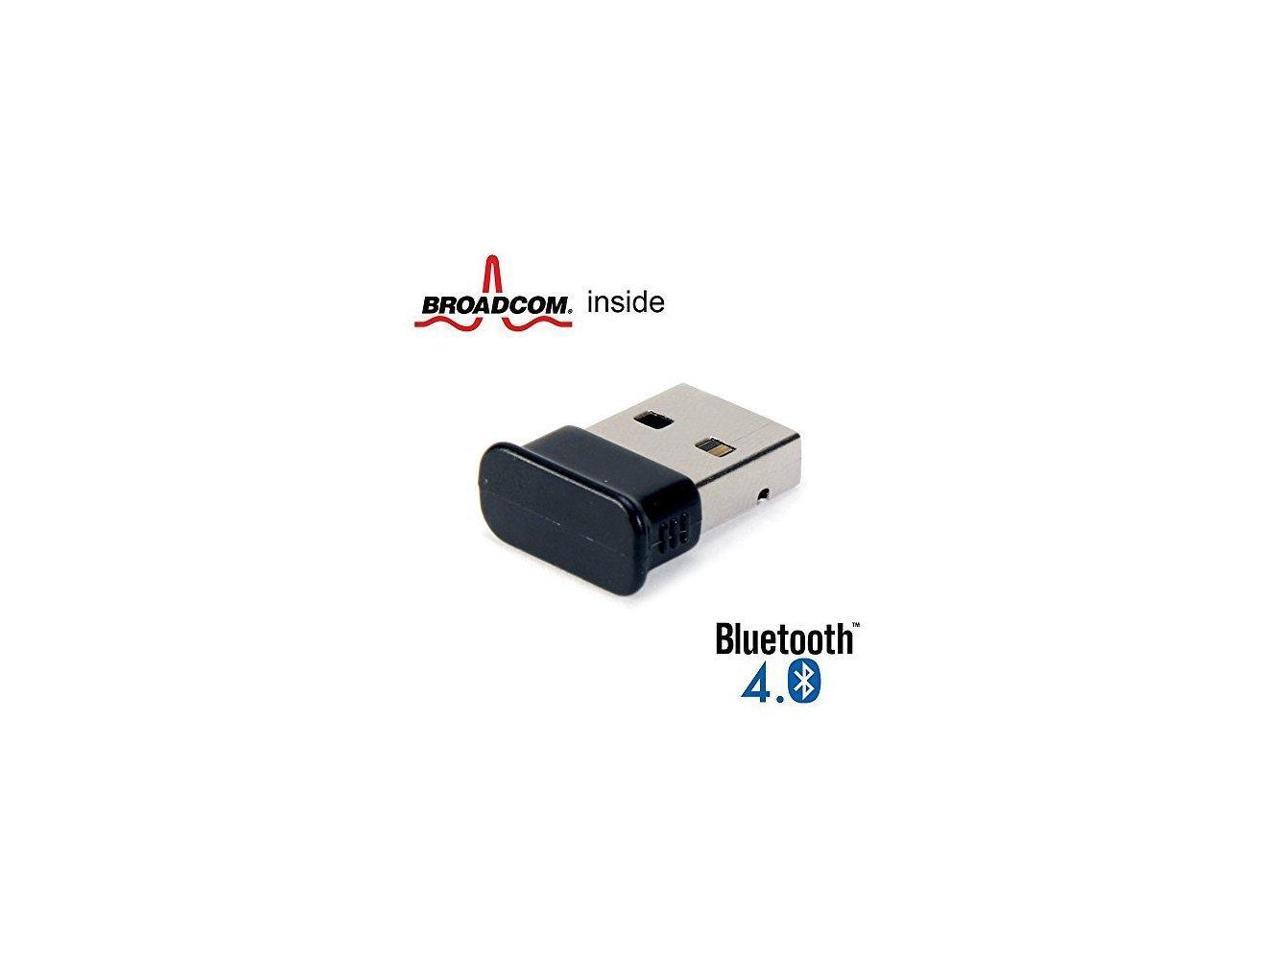 broadcom bcm20702 bluetooth 4.0 usb device manager